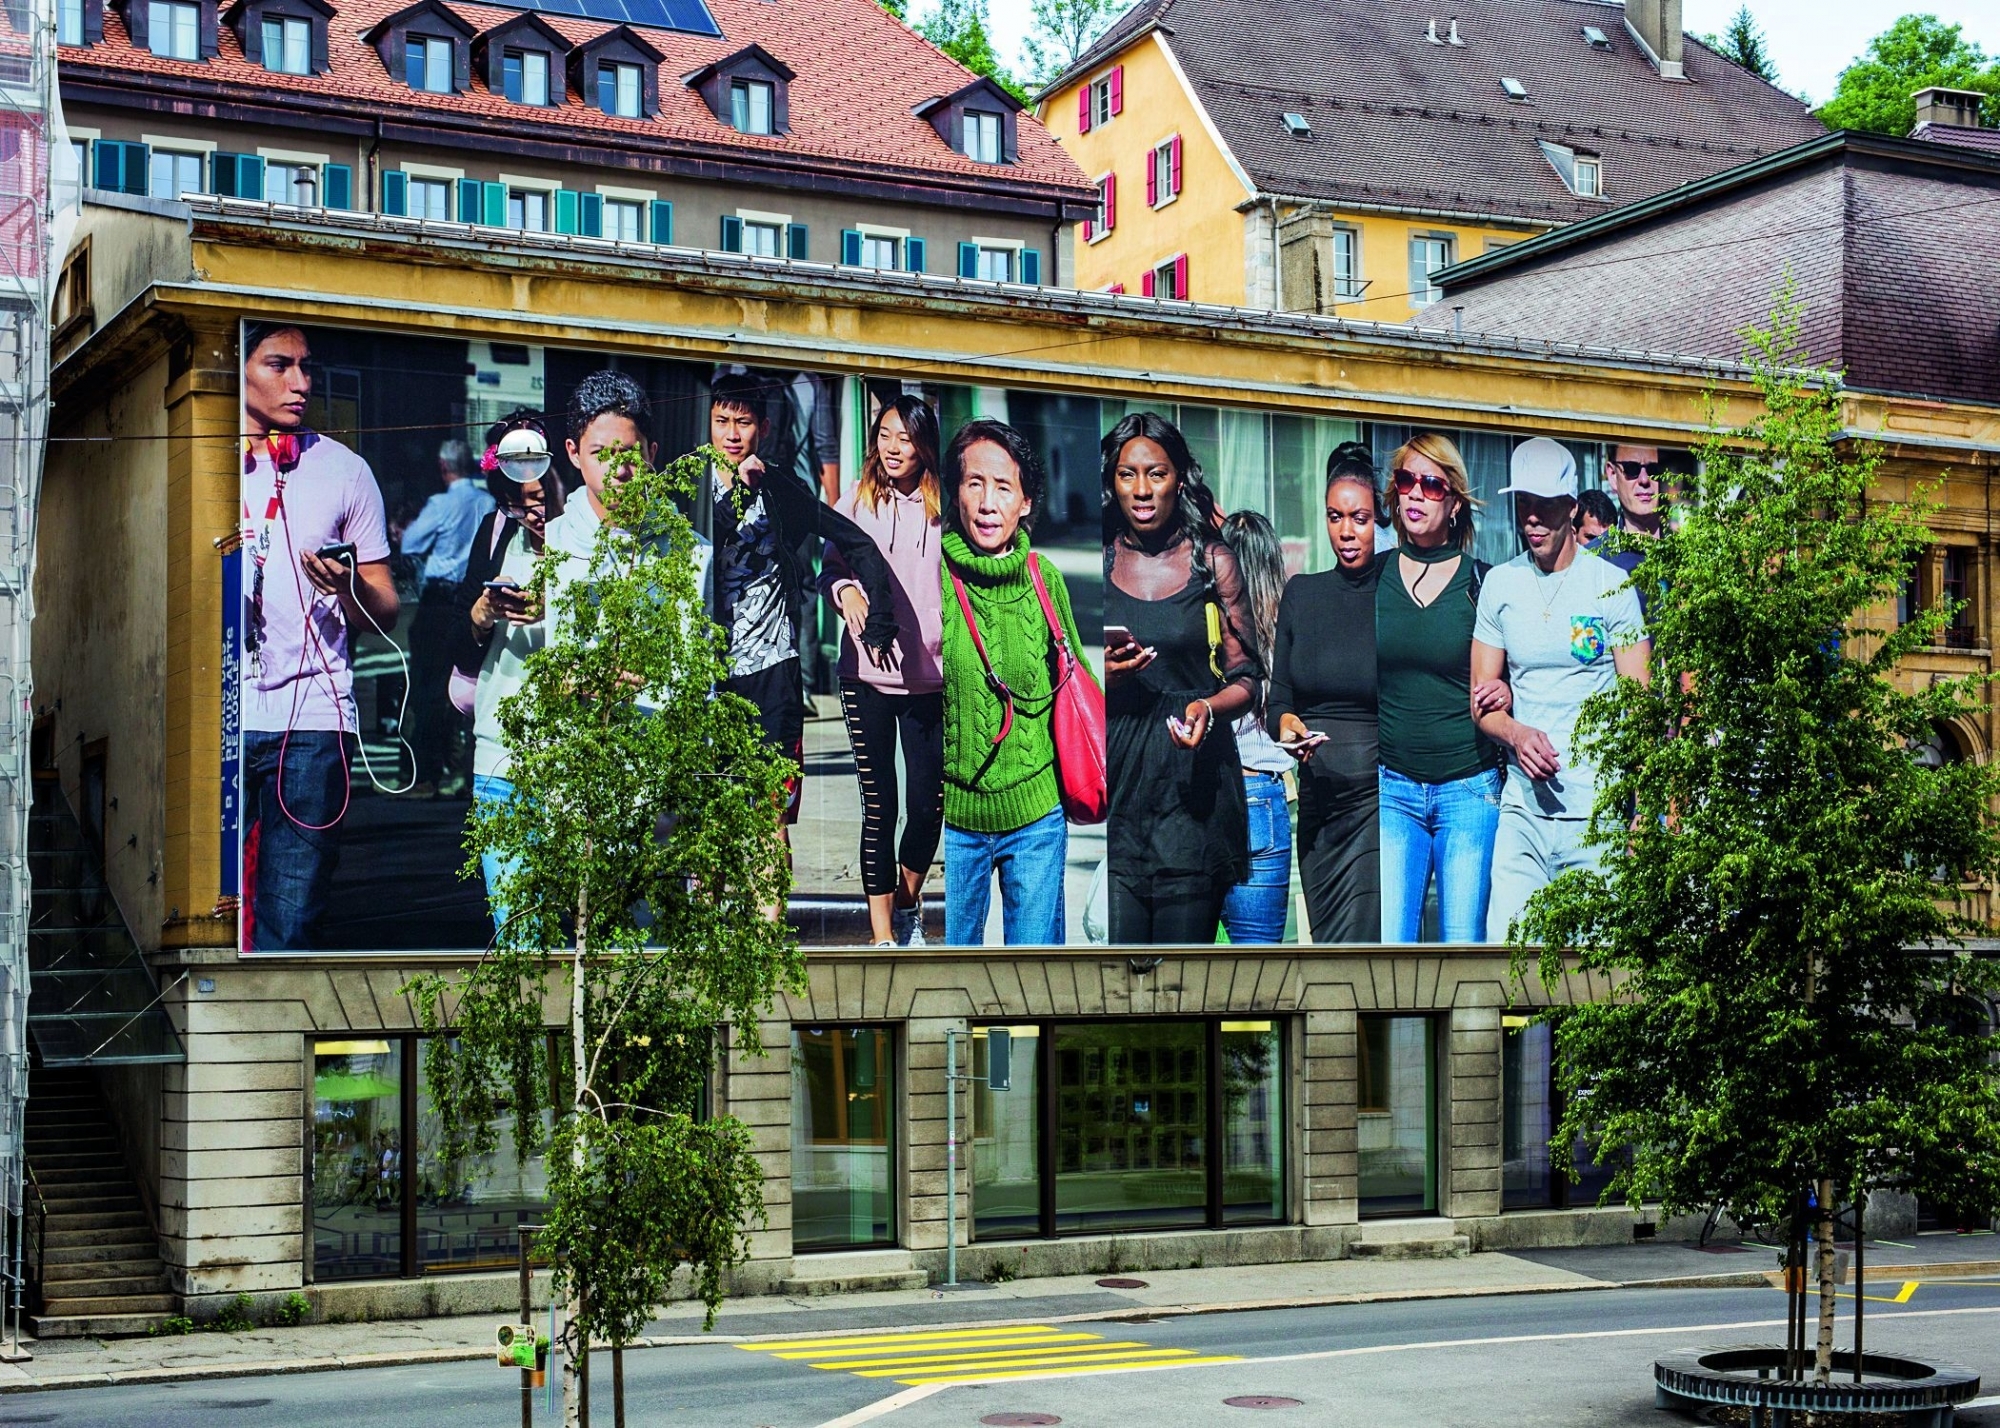 La façade du musée en exutoire à la pandémie? Installation réalisée par l’artiste suisse Beat Streuli.